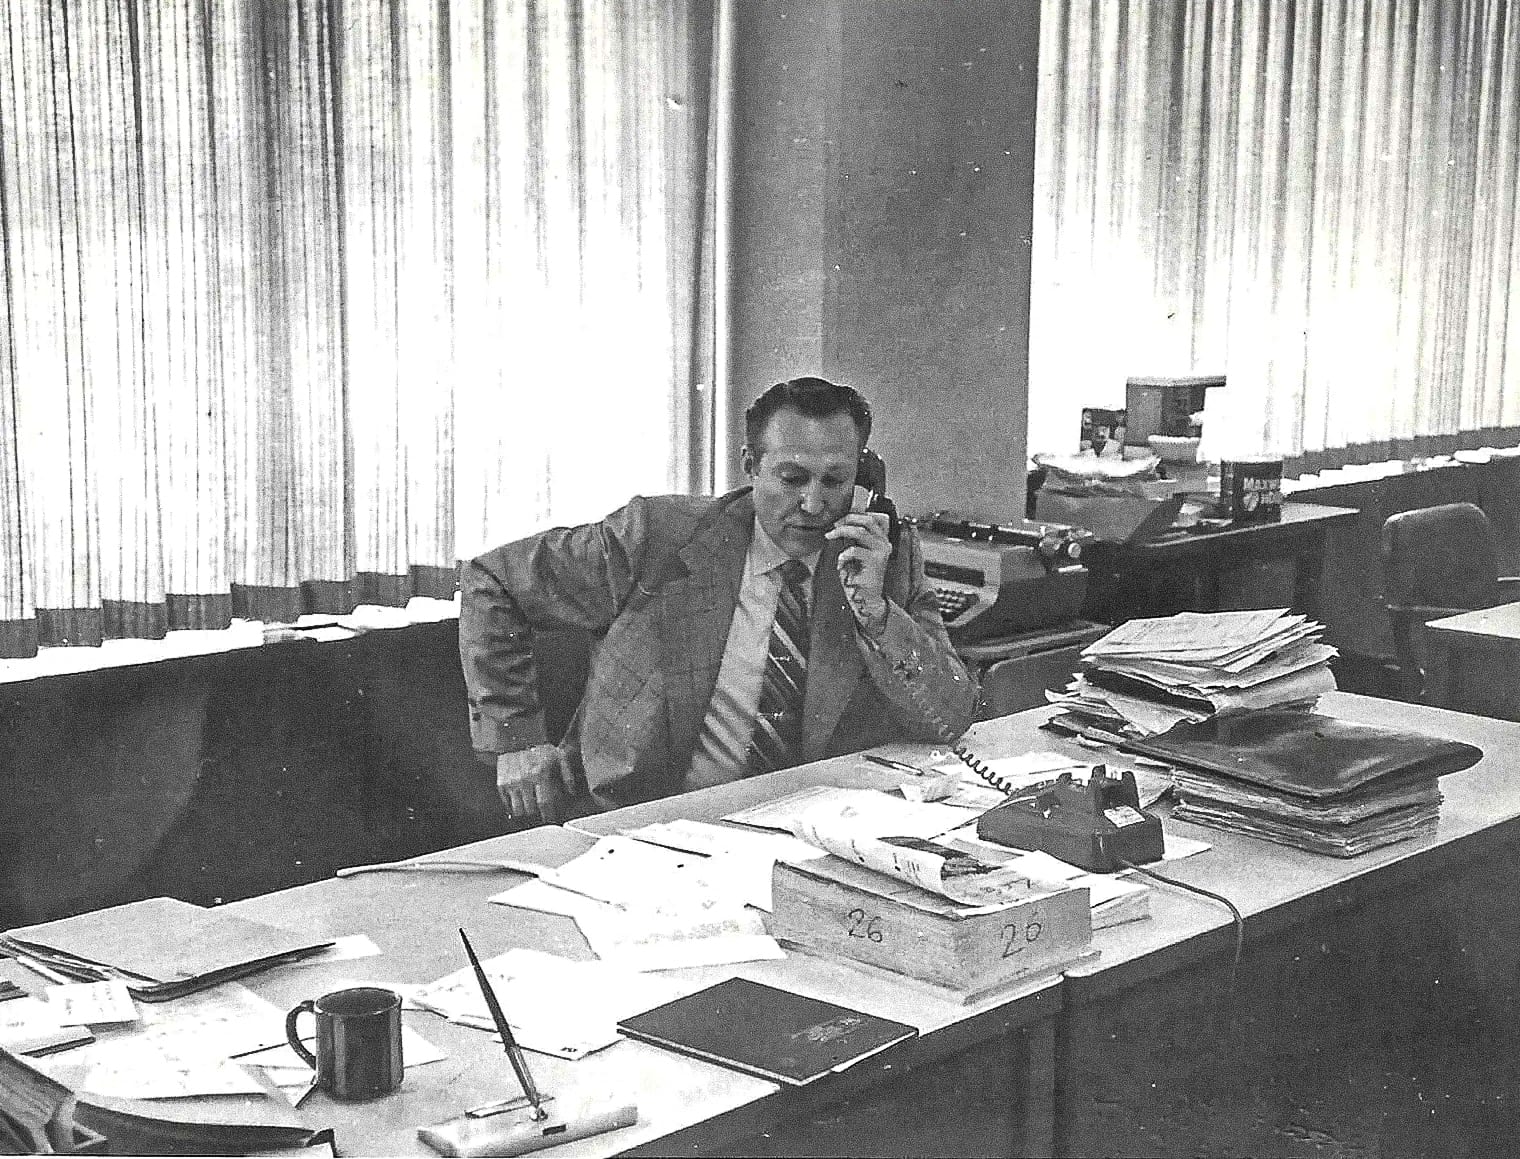 סוכן האף-בי-איי ראלף הימלסבך במהלך חקירת תיק די. בי. קופר בתחילת שנות השבעים (צילום: מתוך האלבום המשפחתי)